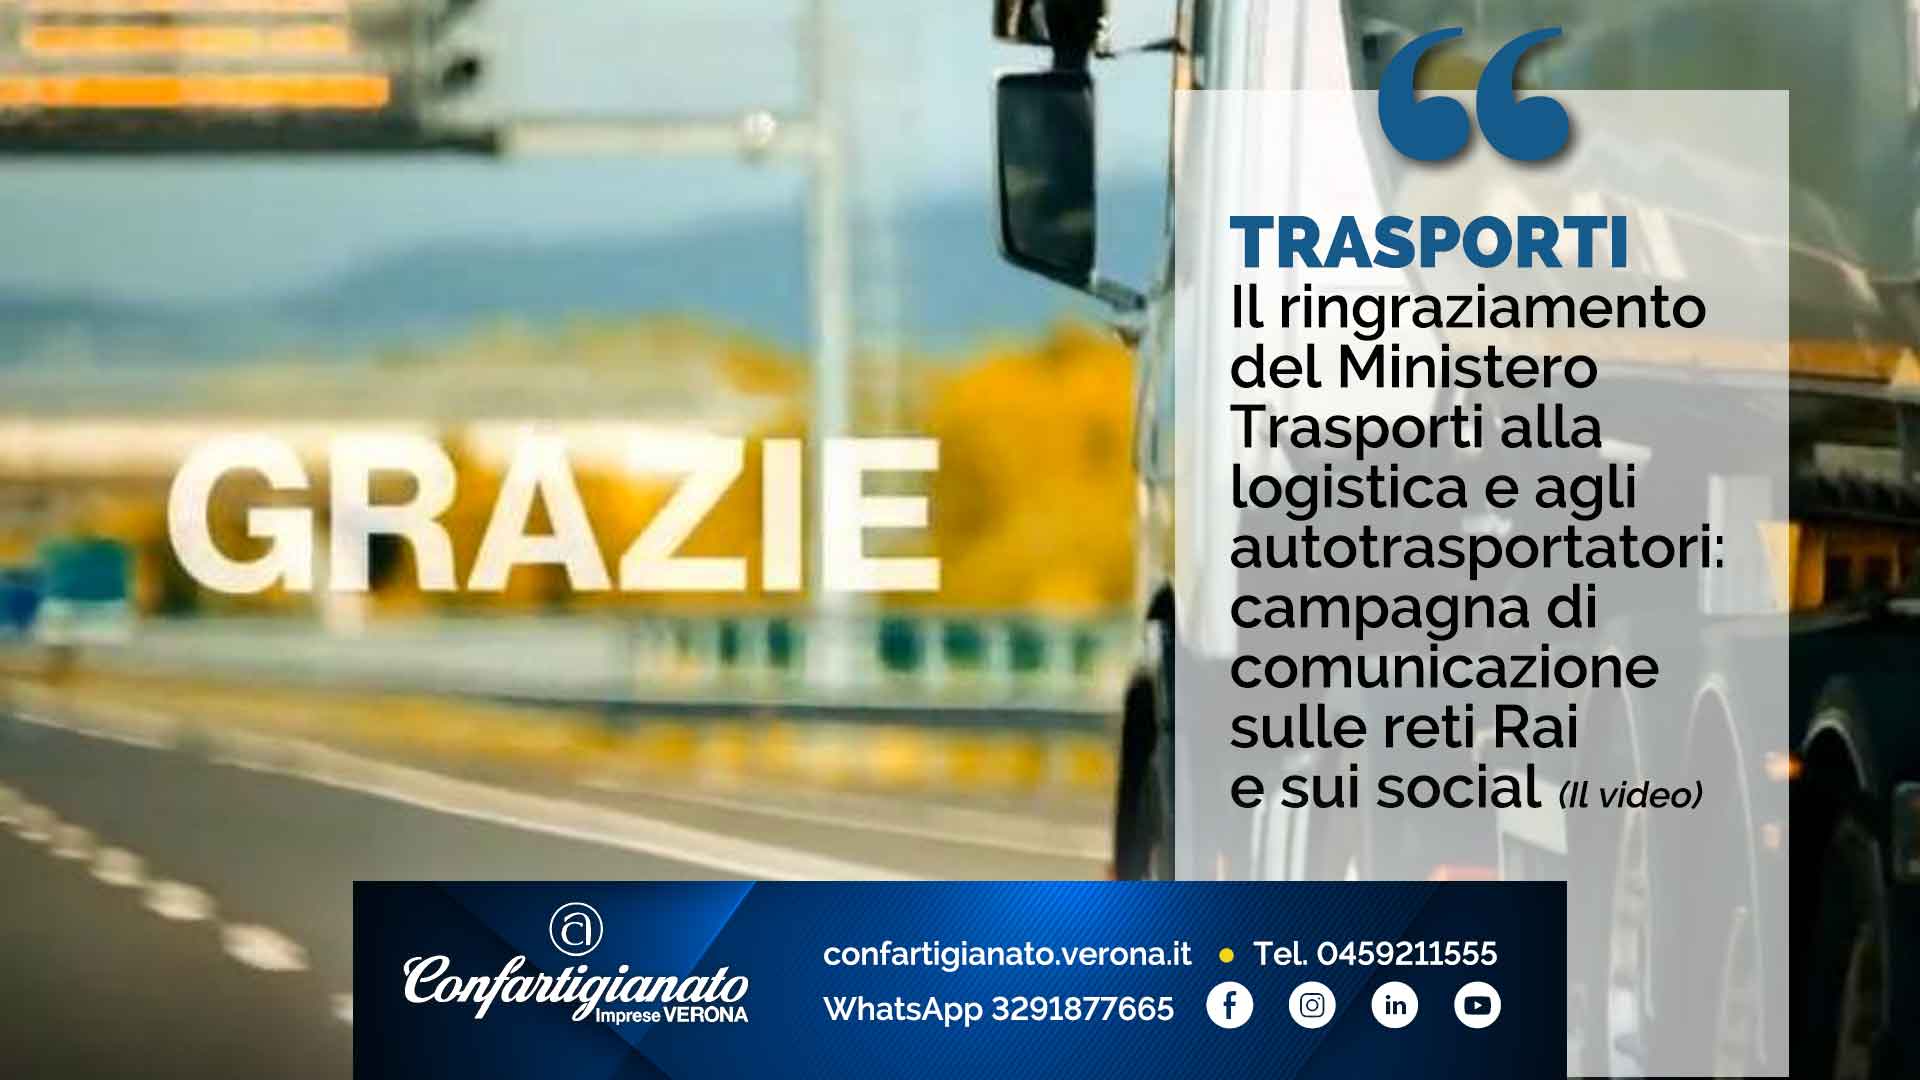 TRASPORTI – Il grazie del Ministero Trasporti alla logistica e agli autotrasportatori: campagna di comunicazione su reti Rai e social